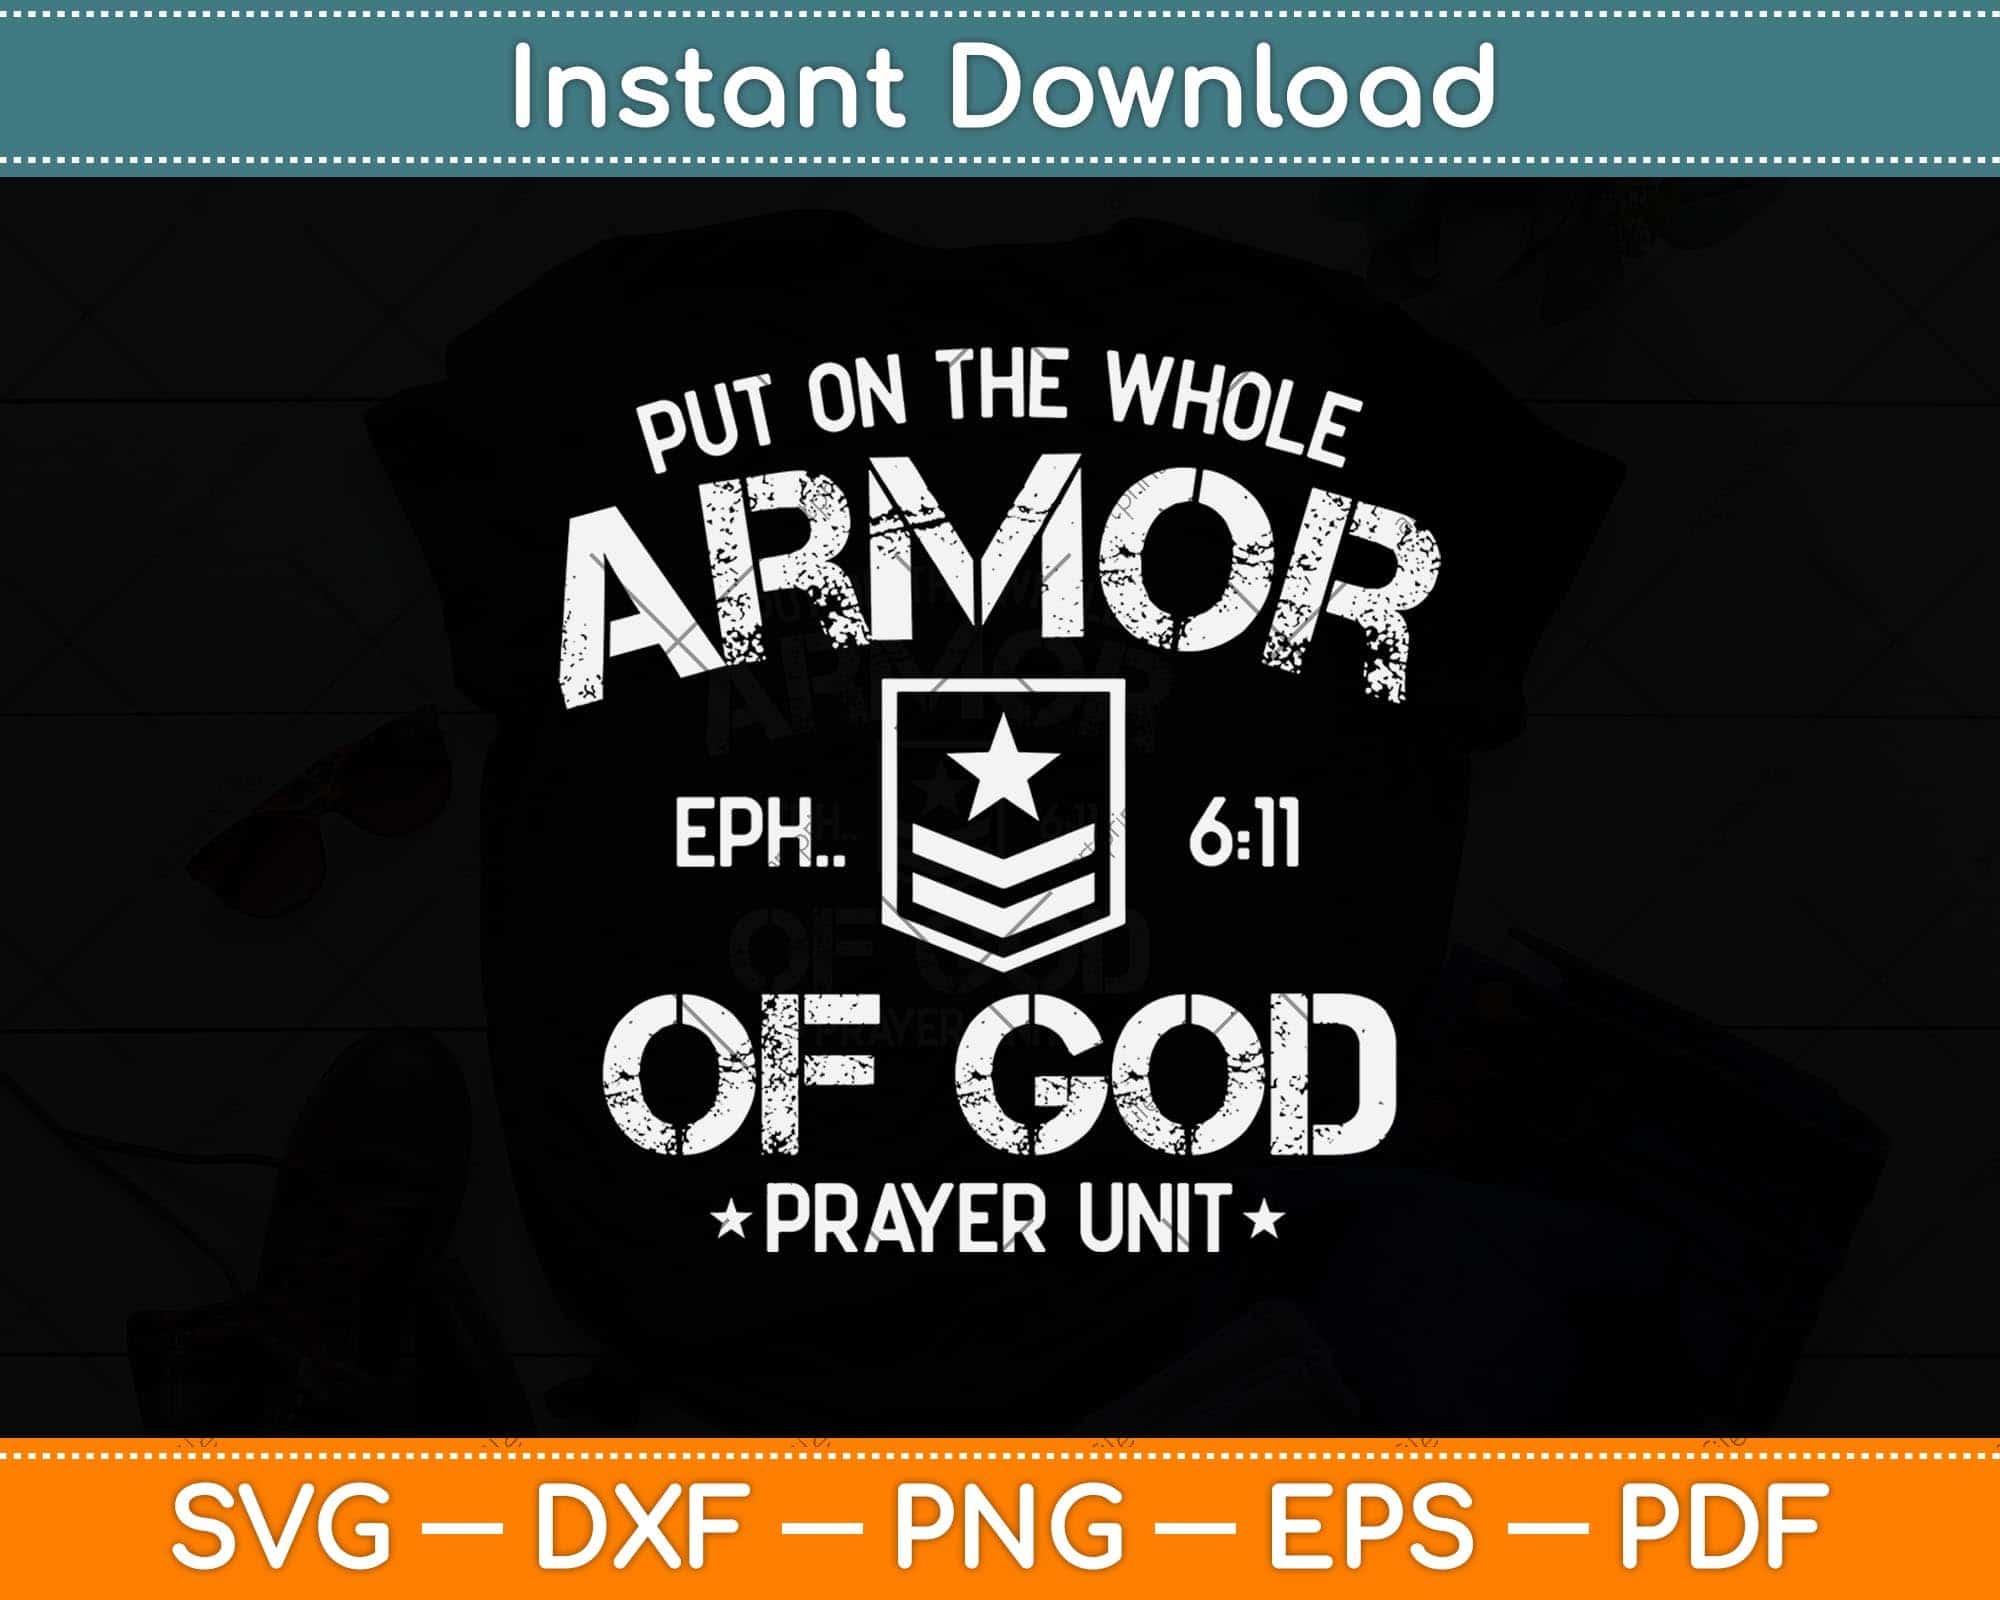 full armor of god prayer